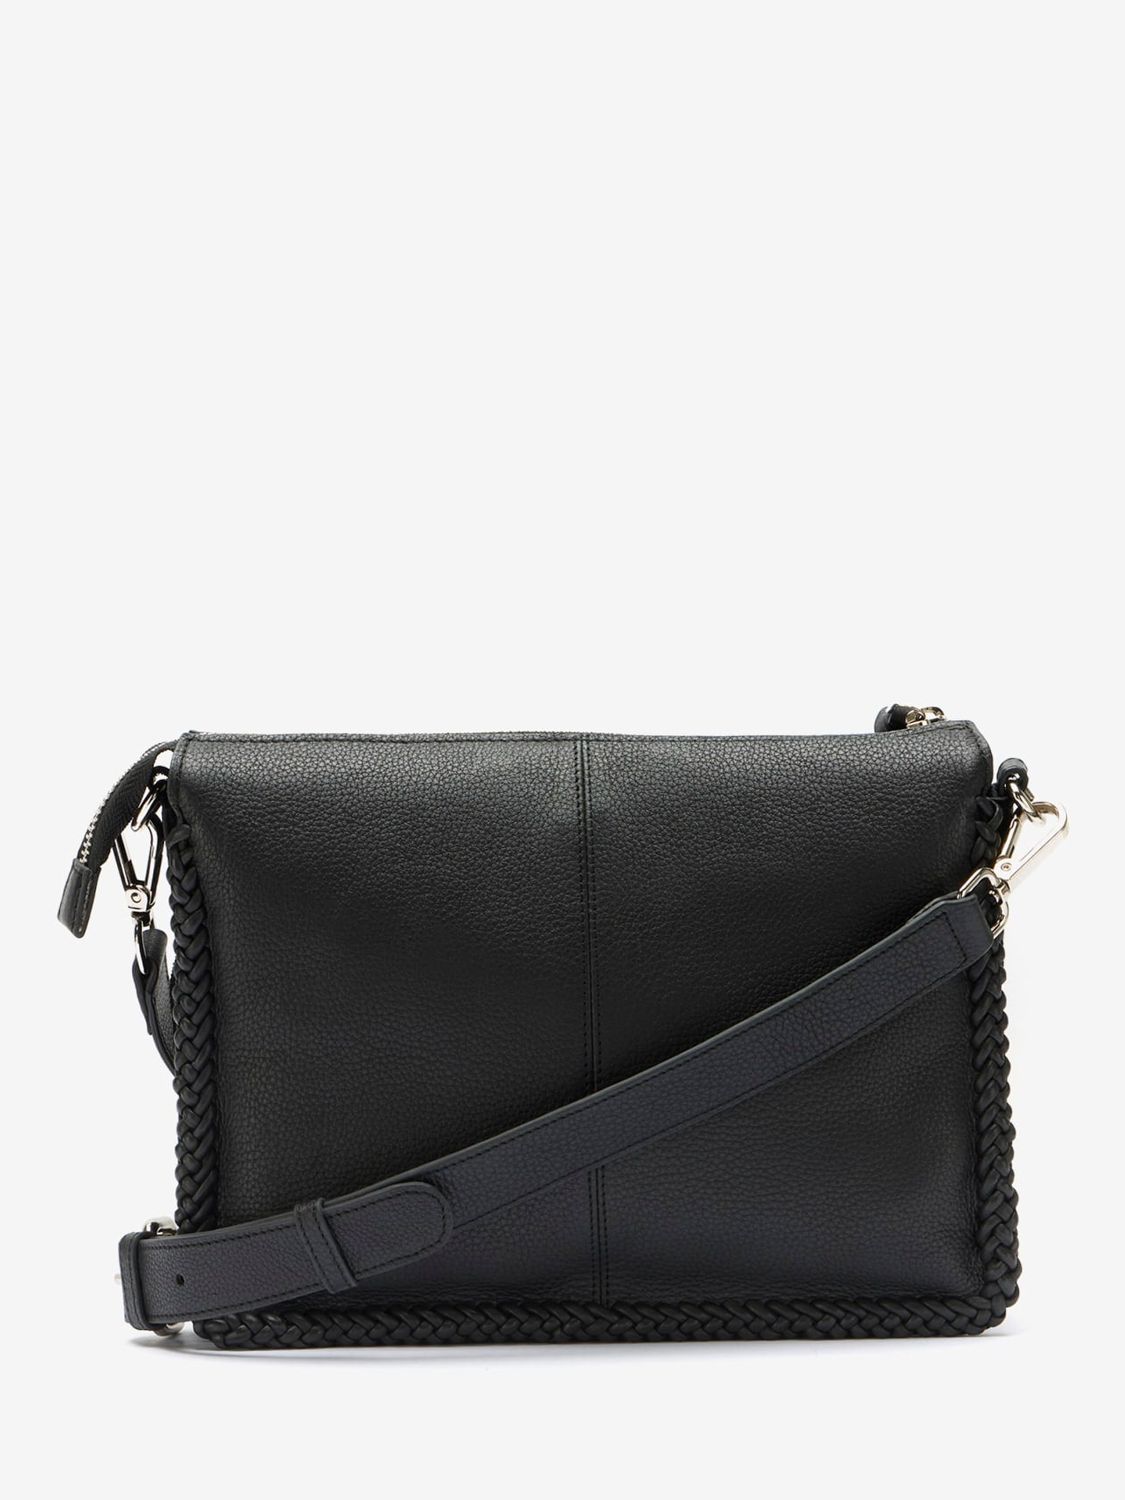 Mint Velvet Leather Cross Body Bag, Black at John Lewis & Partners